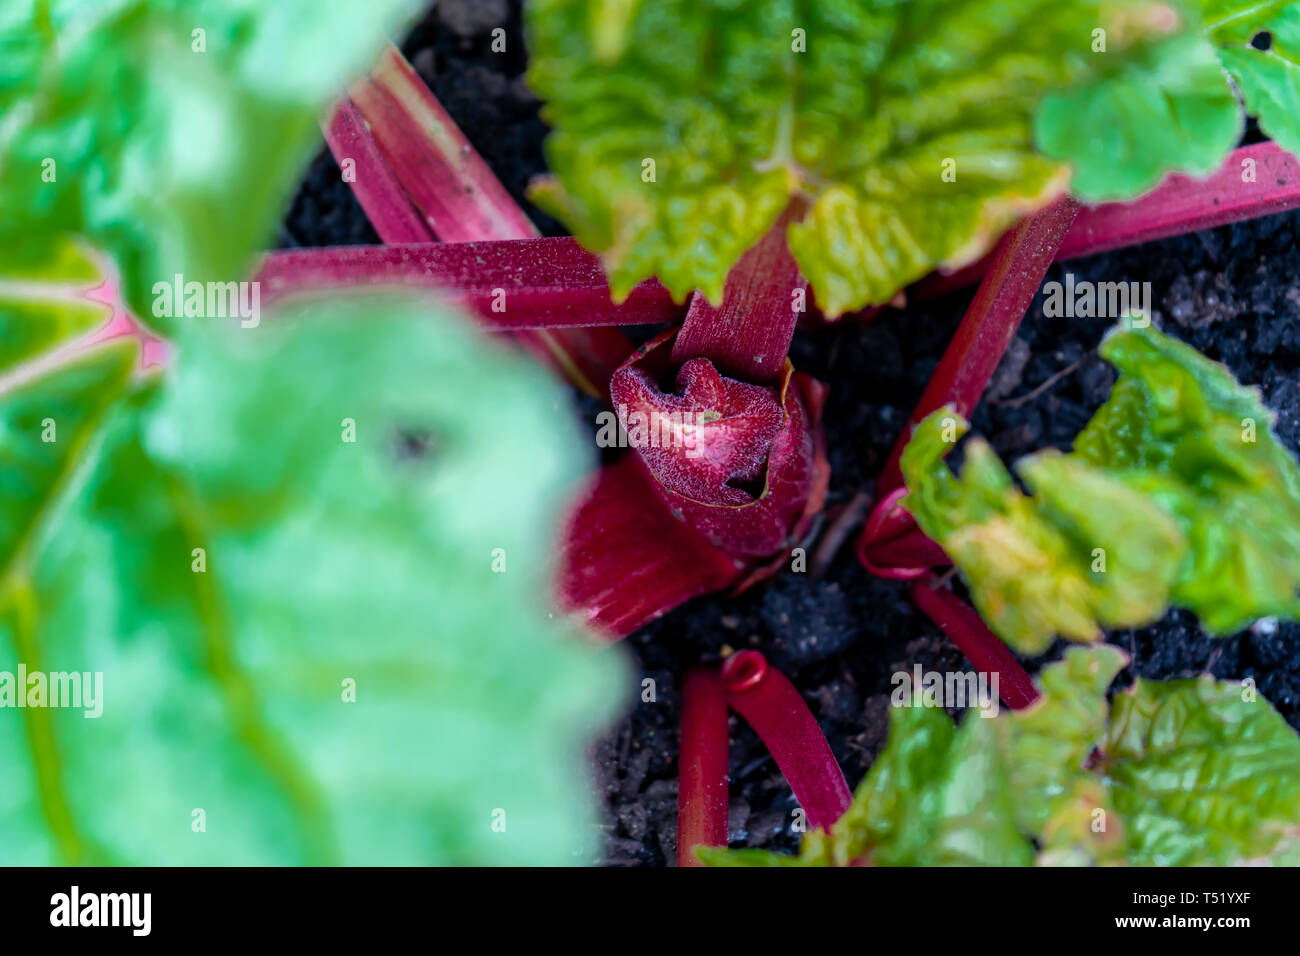 Makro Nahaufnahme von roten Rhabarber Krone aus einem Haus Garten wachsen. Selektiver Fokus, mit roten Stielen und grüne Blätter mit Oxalsäure. Edibl Stockfoto